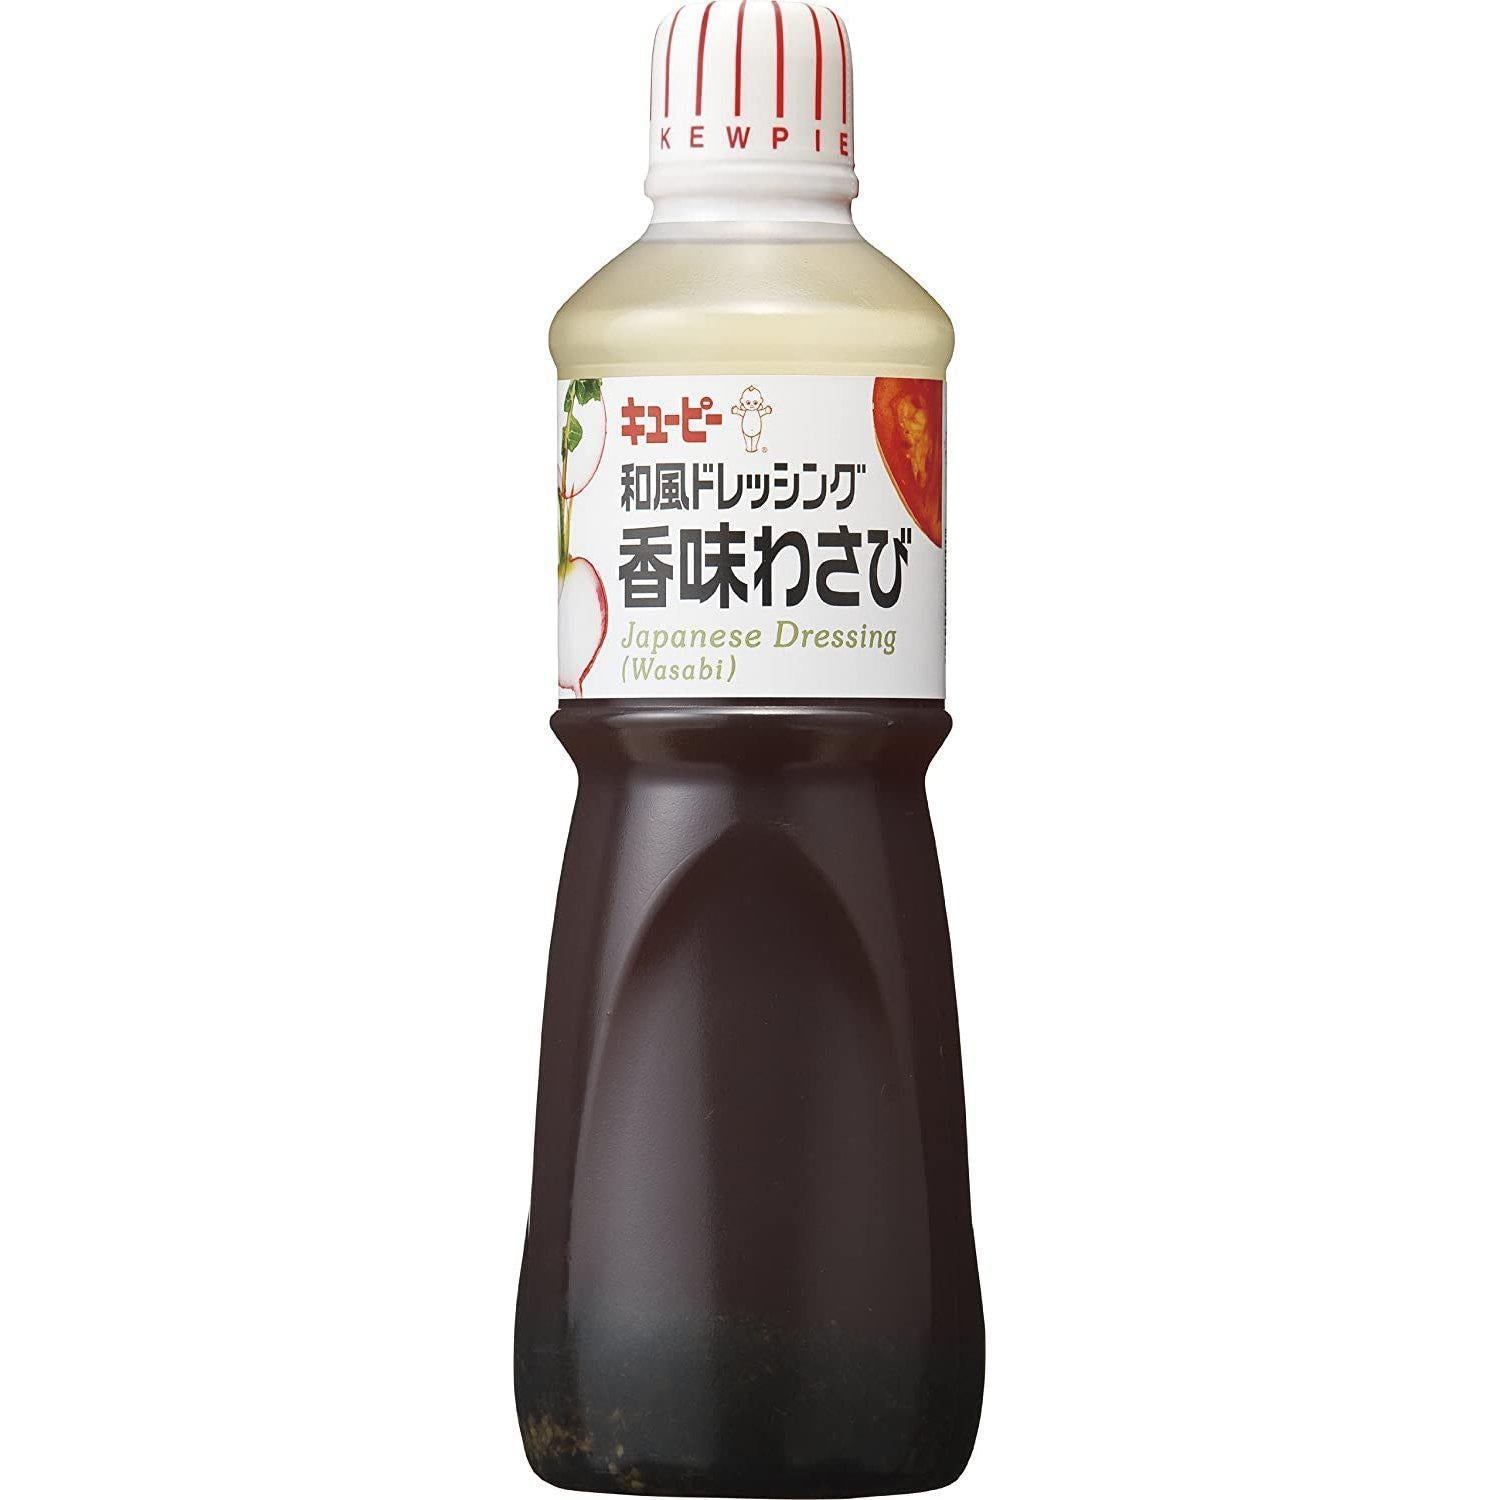 Kewpie Japanese Dressing Wasabi Flavor 1000ml, Japanese Taste